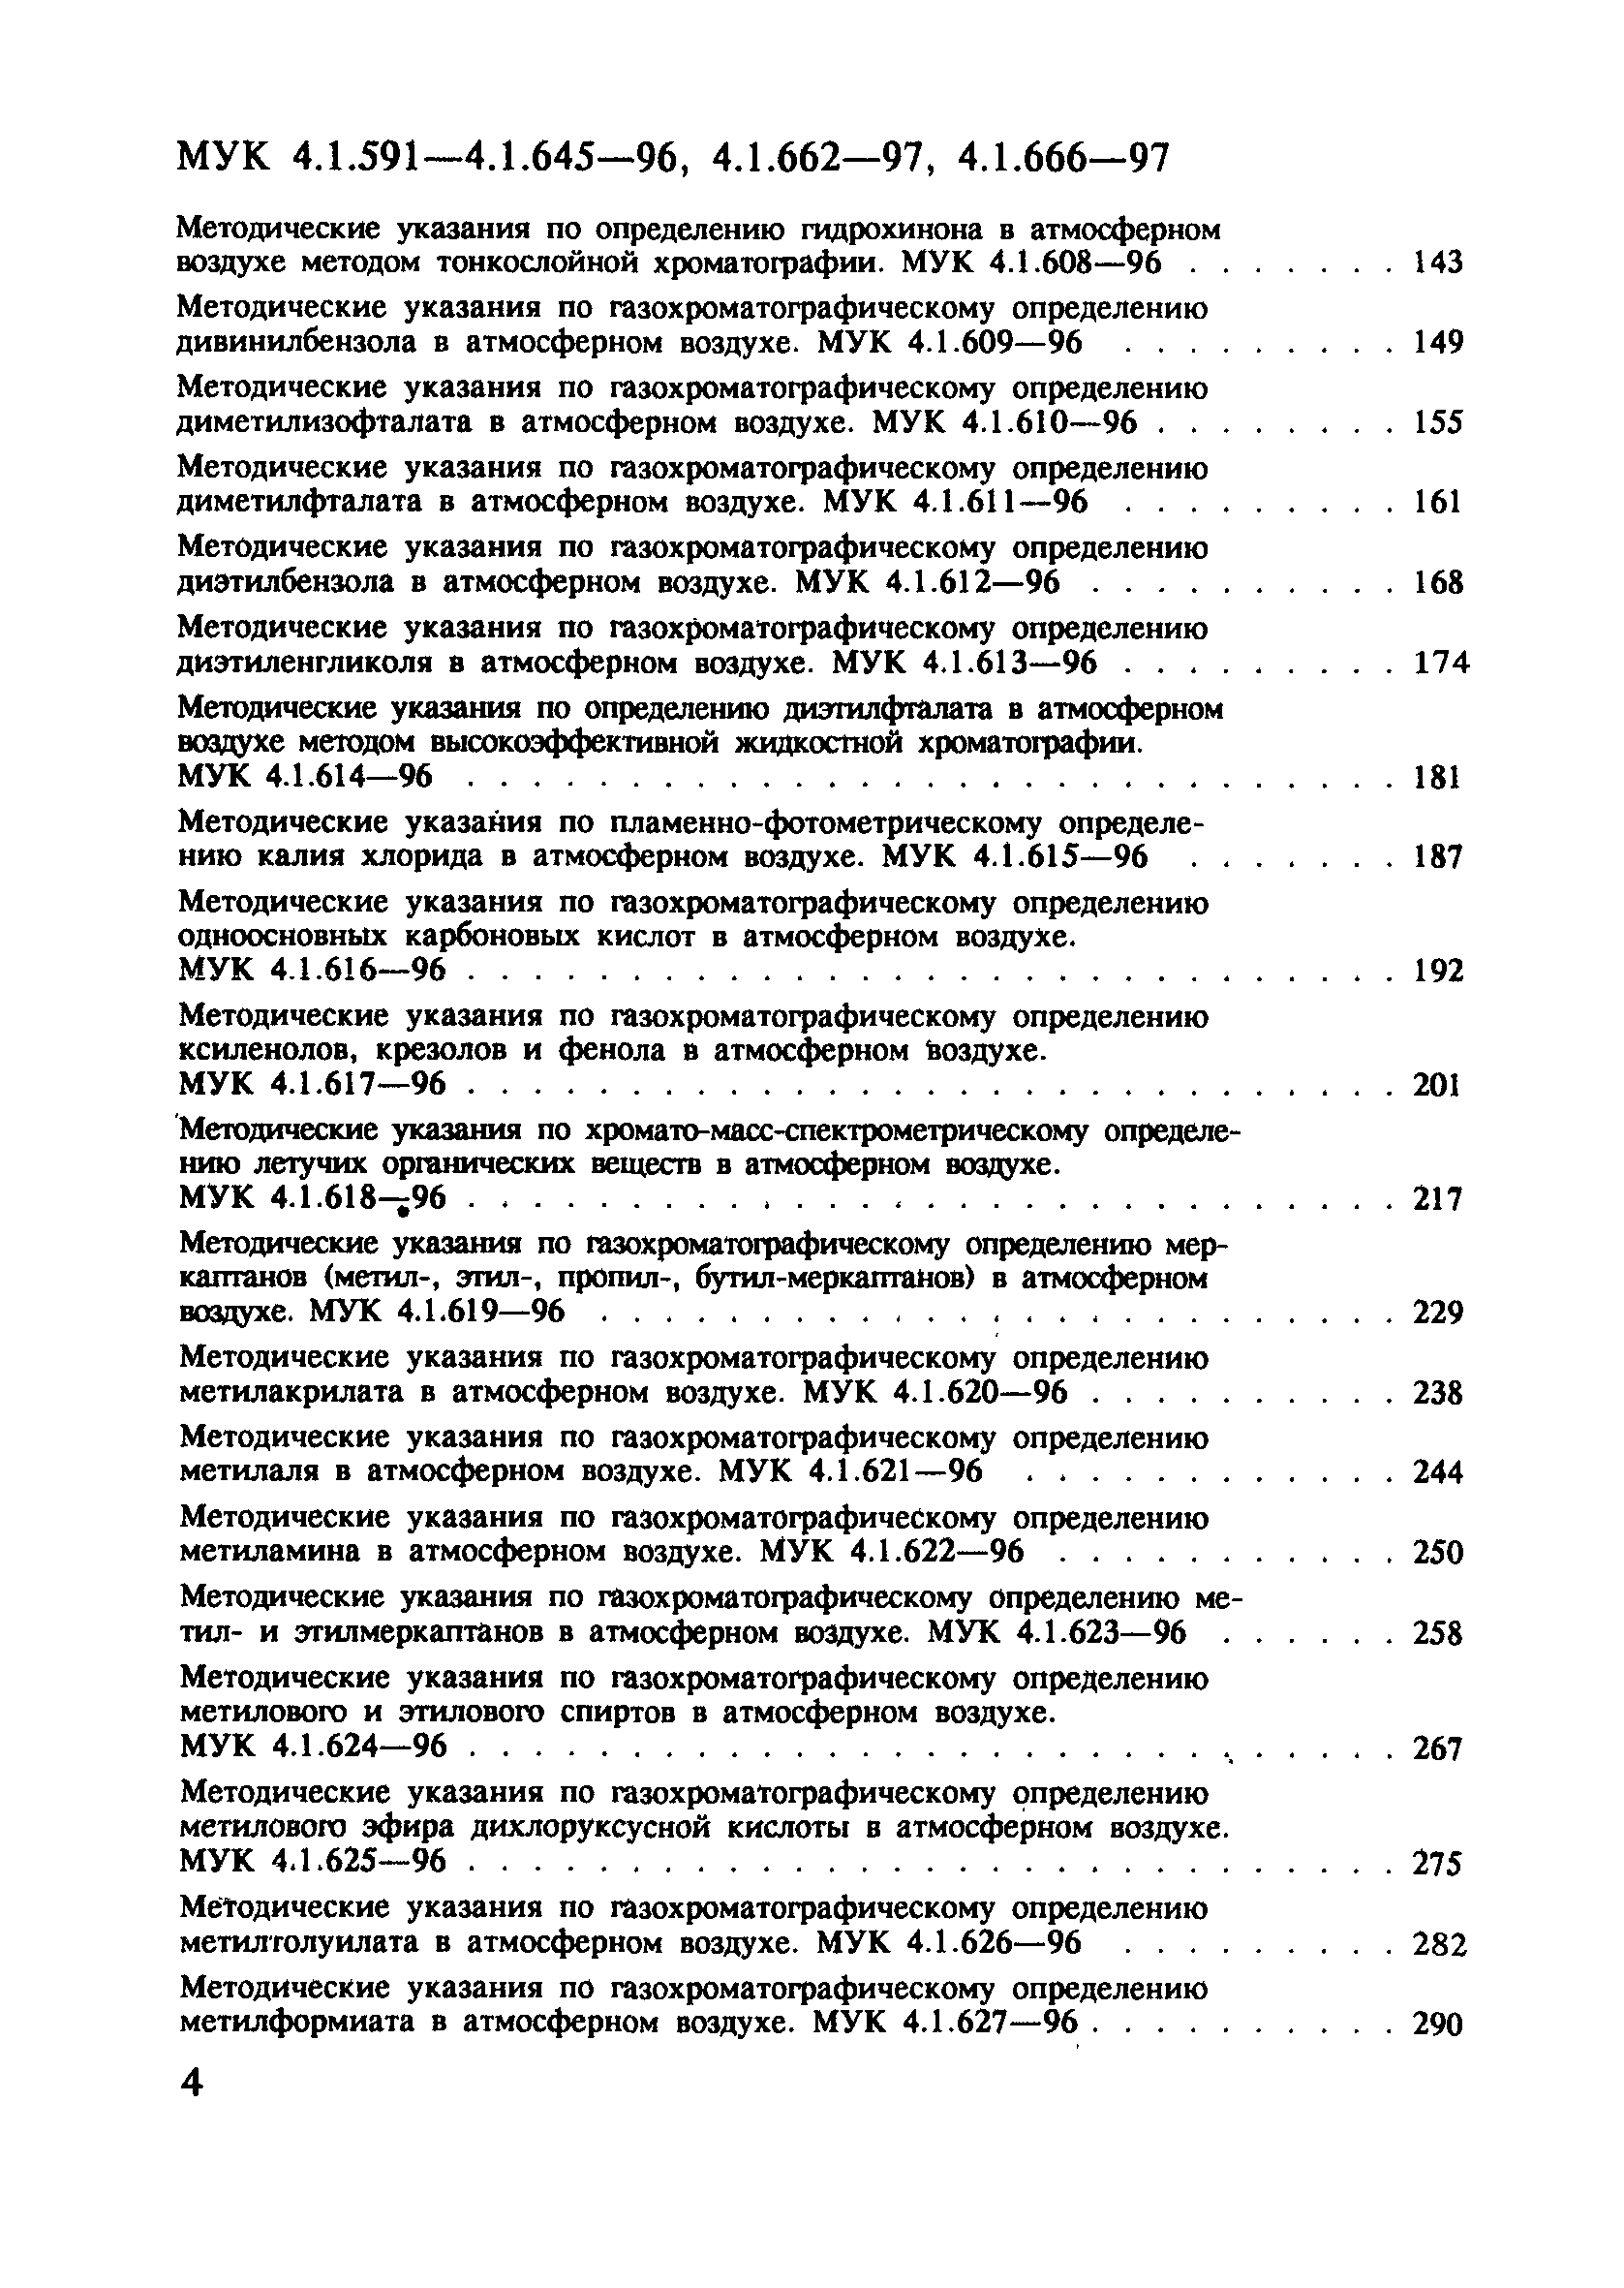 МУК 4.1.620-96